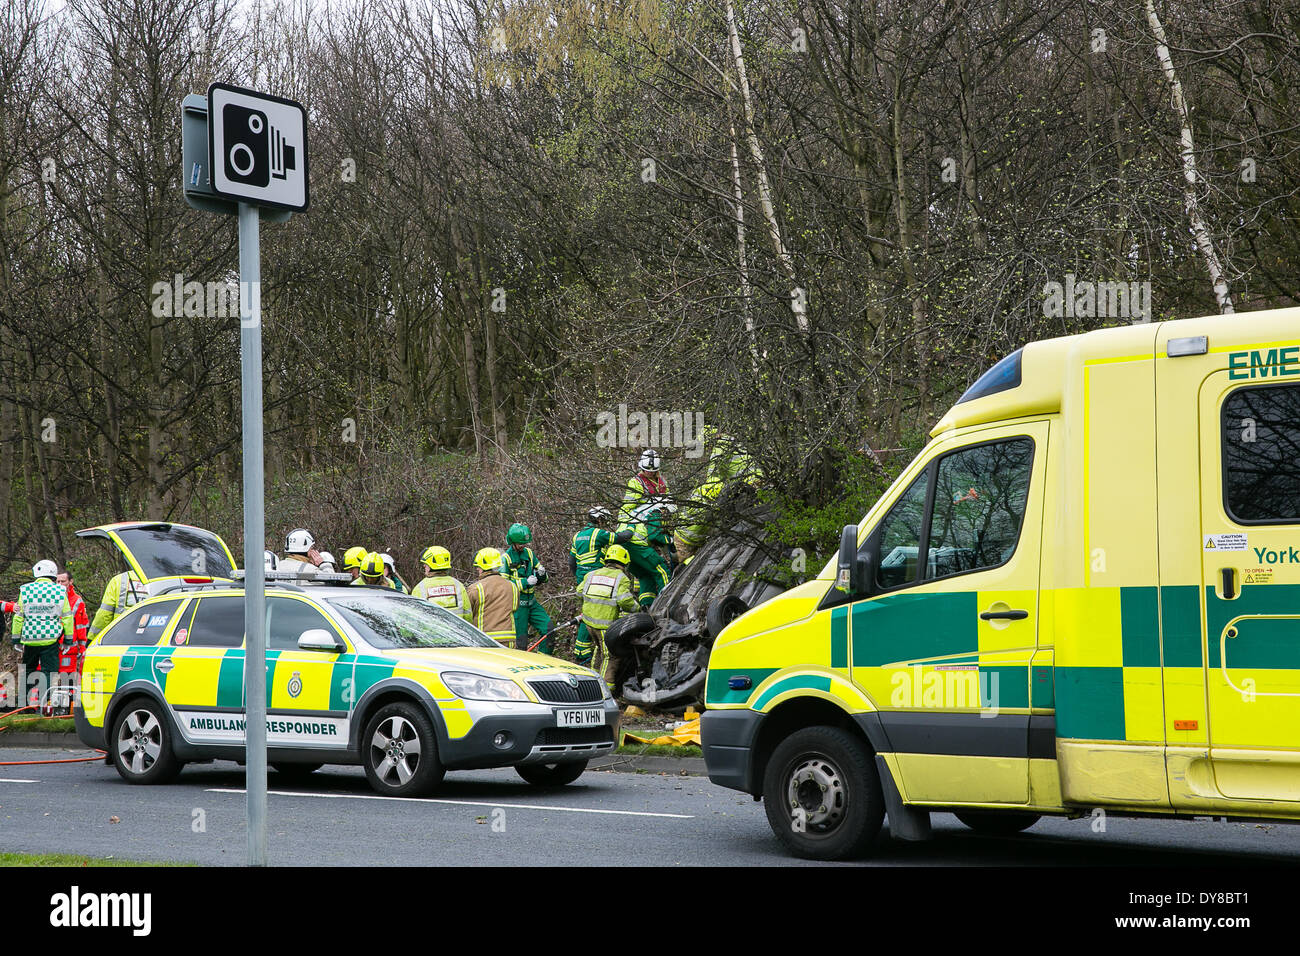 Queenswood dur, Leeds West Yorkshire UK 9 avril 2014. Les services d'urgence assister à un incident survenu à autour de 14 heures dans lequel un véhicule s'est retourné dans une longue rue de banlieue. Deux personnes ont été coupées à l'abri de la voiture qui s'est retrouvée sur son toit dans un bois au bord de la route dans le parc Becketts zone LS6 et retiré de la scène en ambulance. Le West Yorkshire Air Ambulance a également assisté à la scène mais n'a pas été utilisée pour le transport des blessés. Un autre véhicule, une Seat Ibiza jaune, qui a été vu pour être endommagé a également été stationnée à proximité. Crédit : Ian Wray/Alamy Live News Banque D'Images